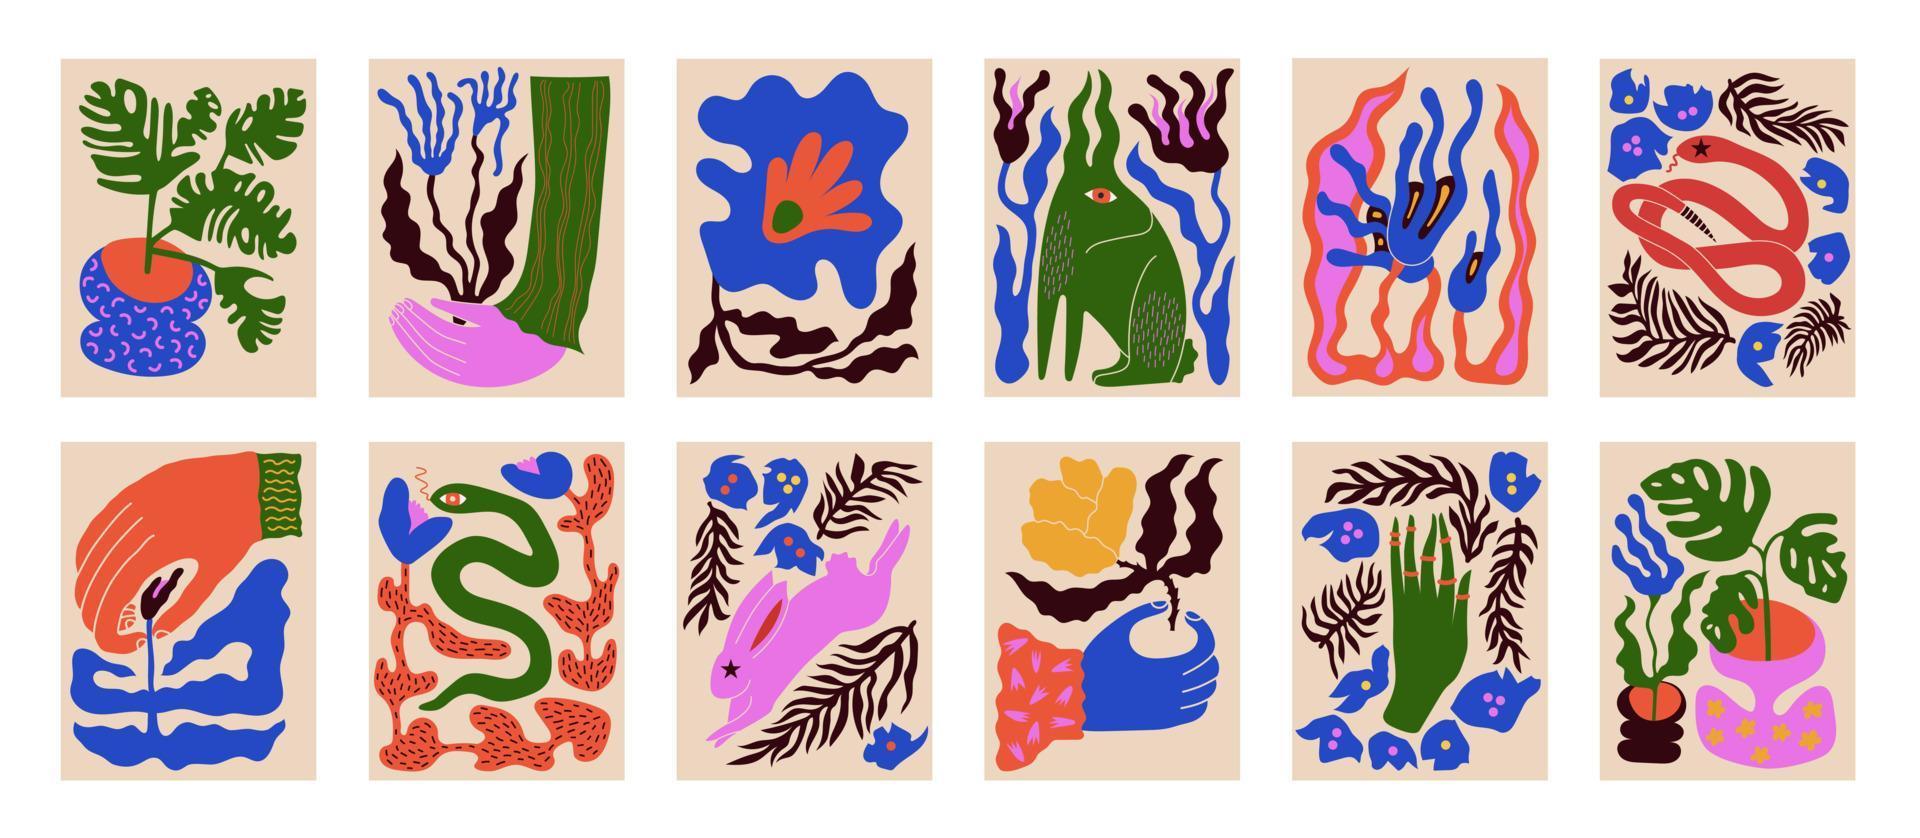 Moderne Gemälde für den Innenraum mit Blumen, Hand, Hase, Schlange. Zeichenstil. farbenfrohe Illustrationen von Stillleben mit Blumen, einer Schlange, einem Hasen, einer Palme für Decken, Bildern. Innenanstrich. vektor